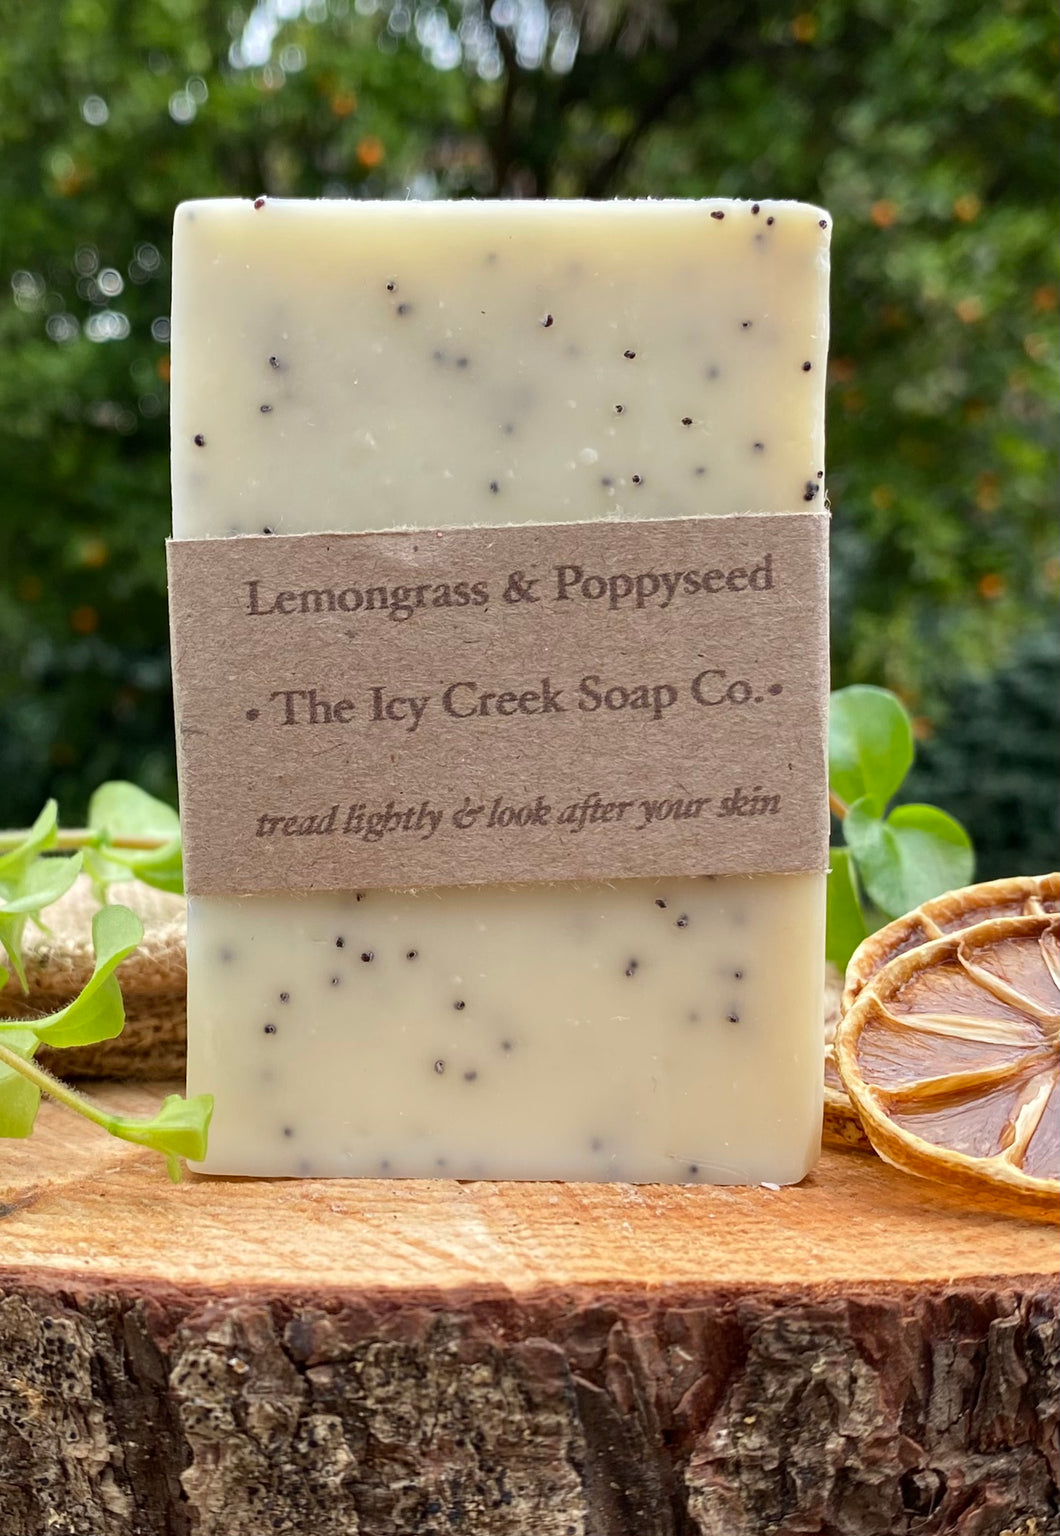 Lemongrass & poppyseed soap